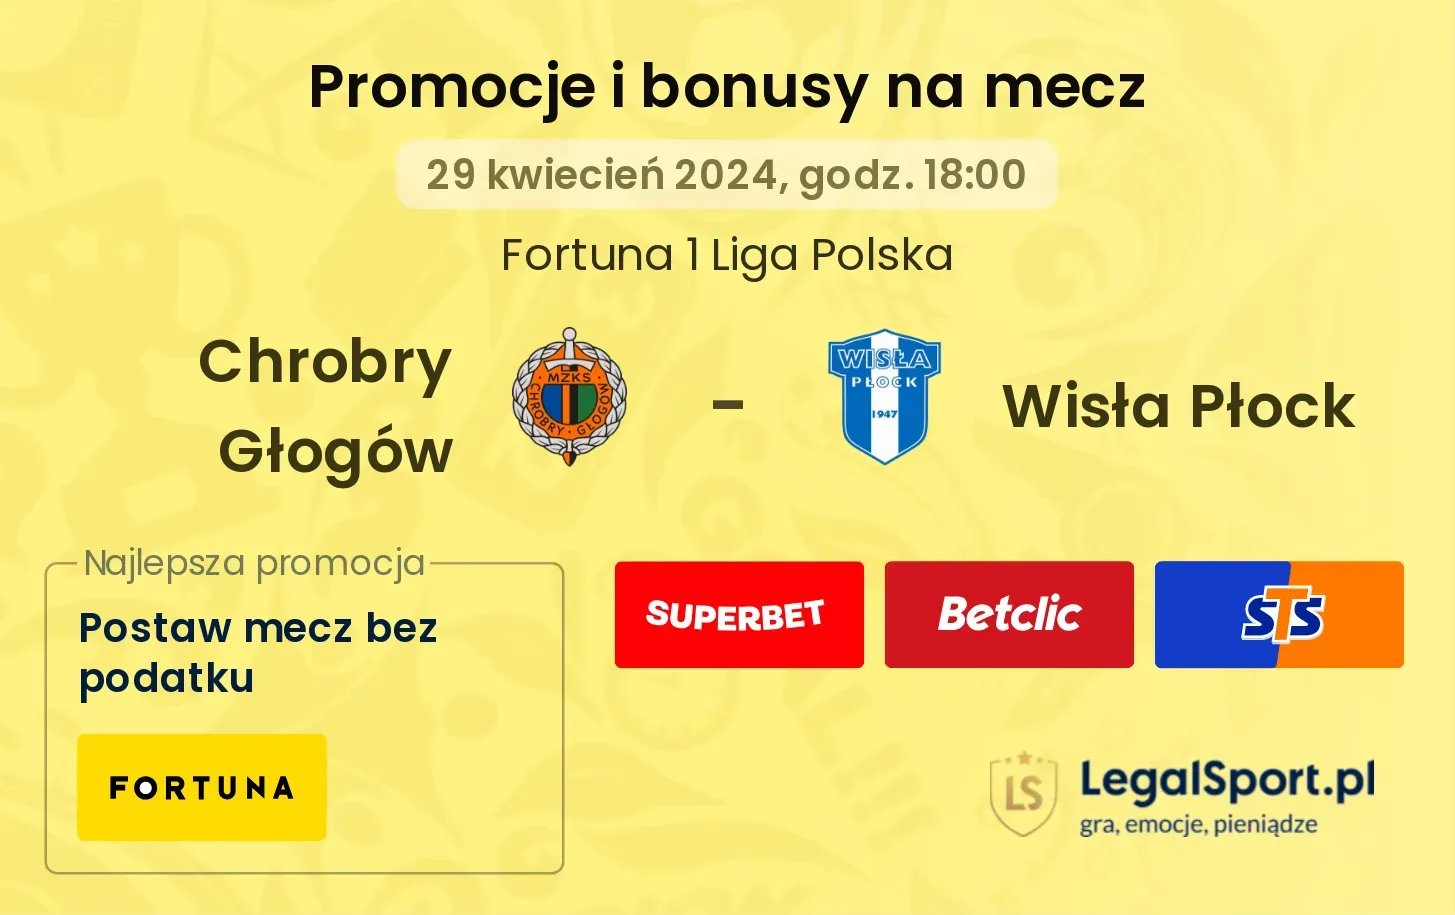 Chrobry Głogów - Wisła Płock promocje bonusy na mecz